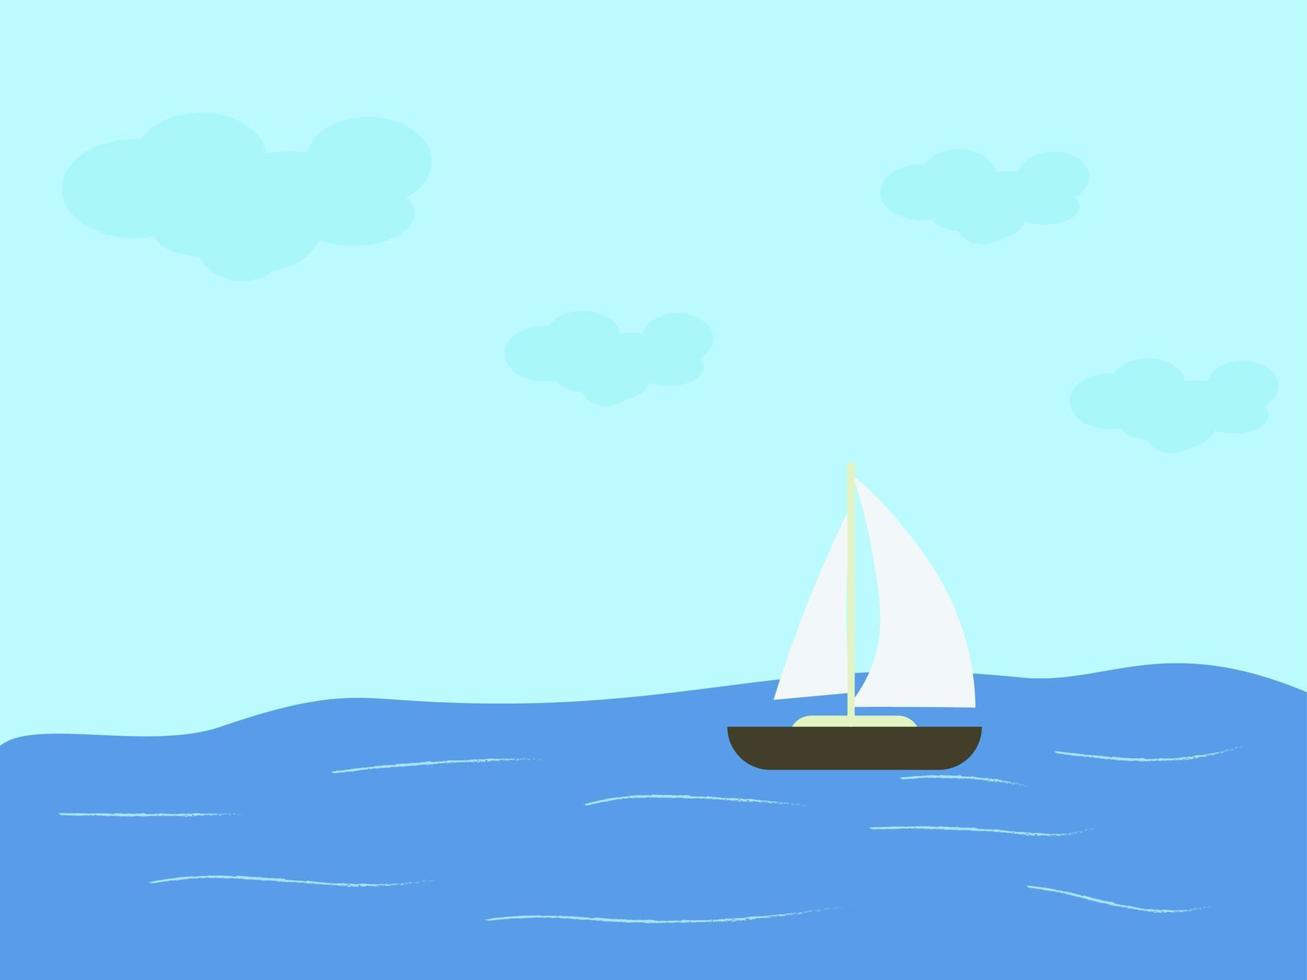 barco sobre el agua, ilustración, vector sobre fondo blanco.